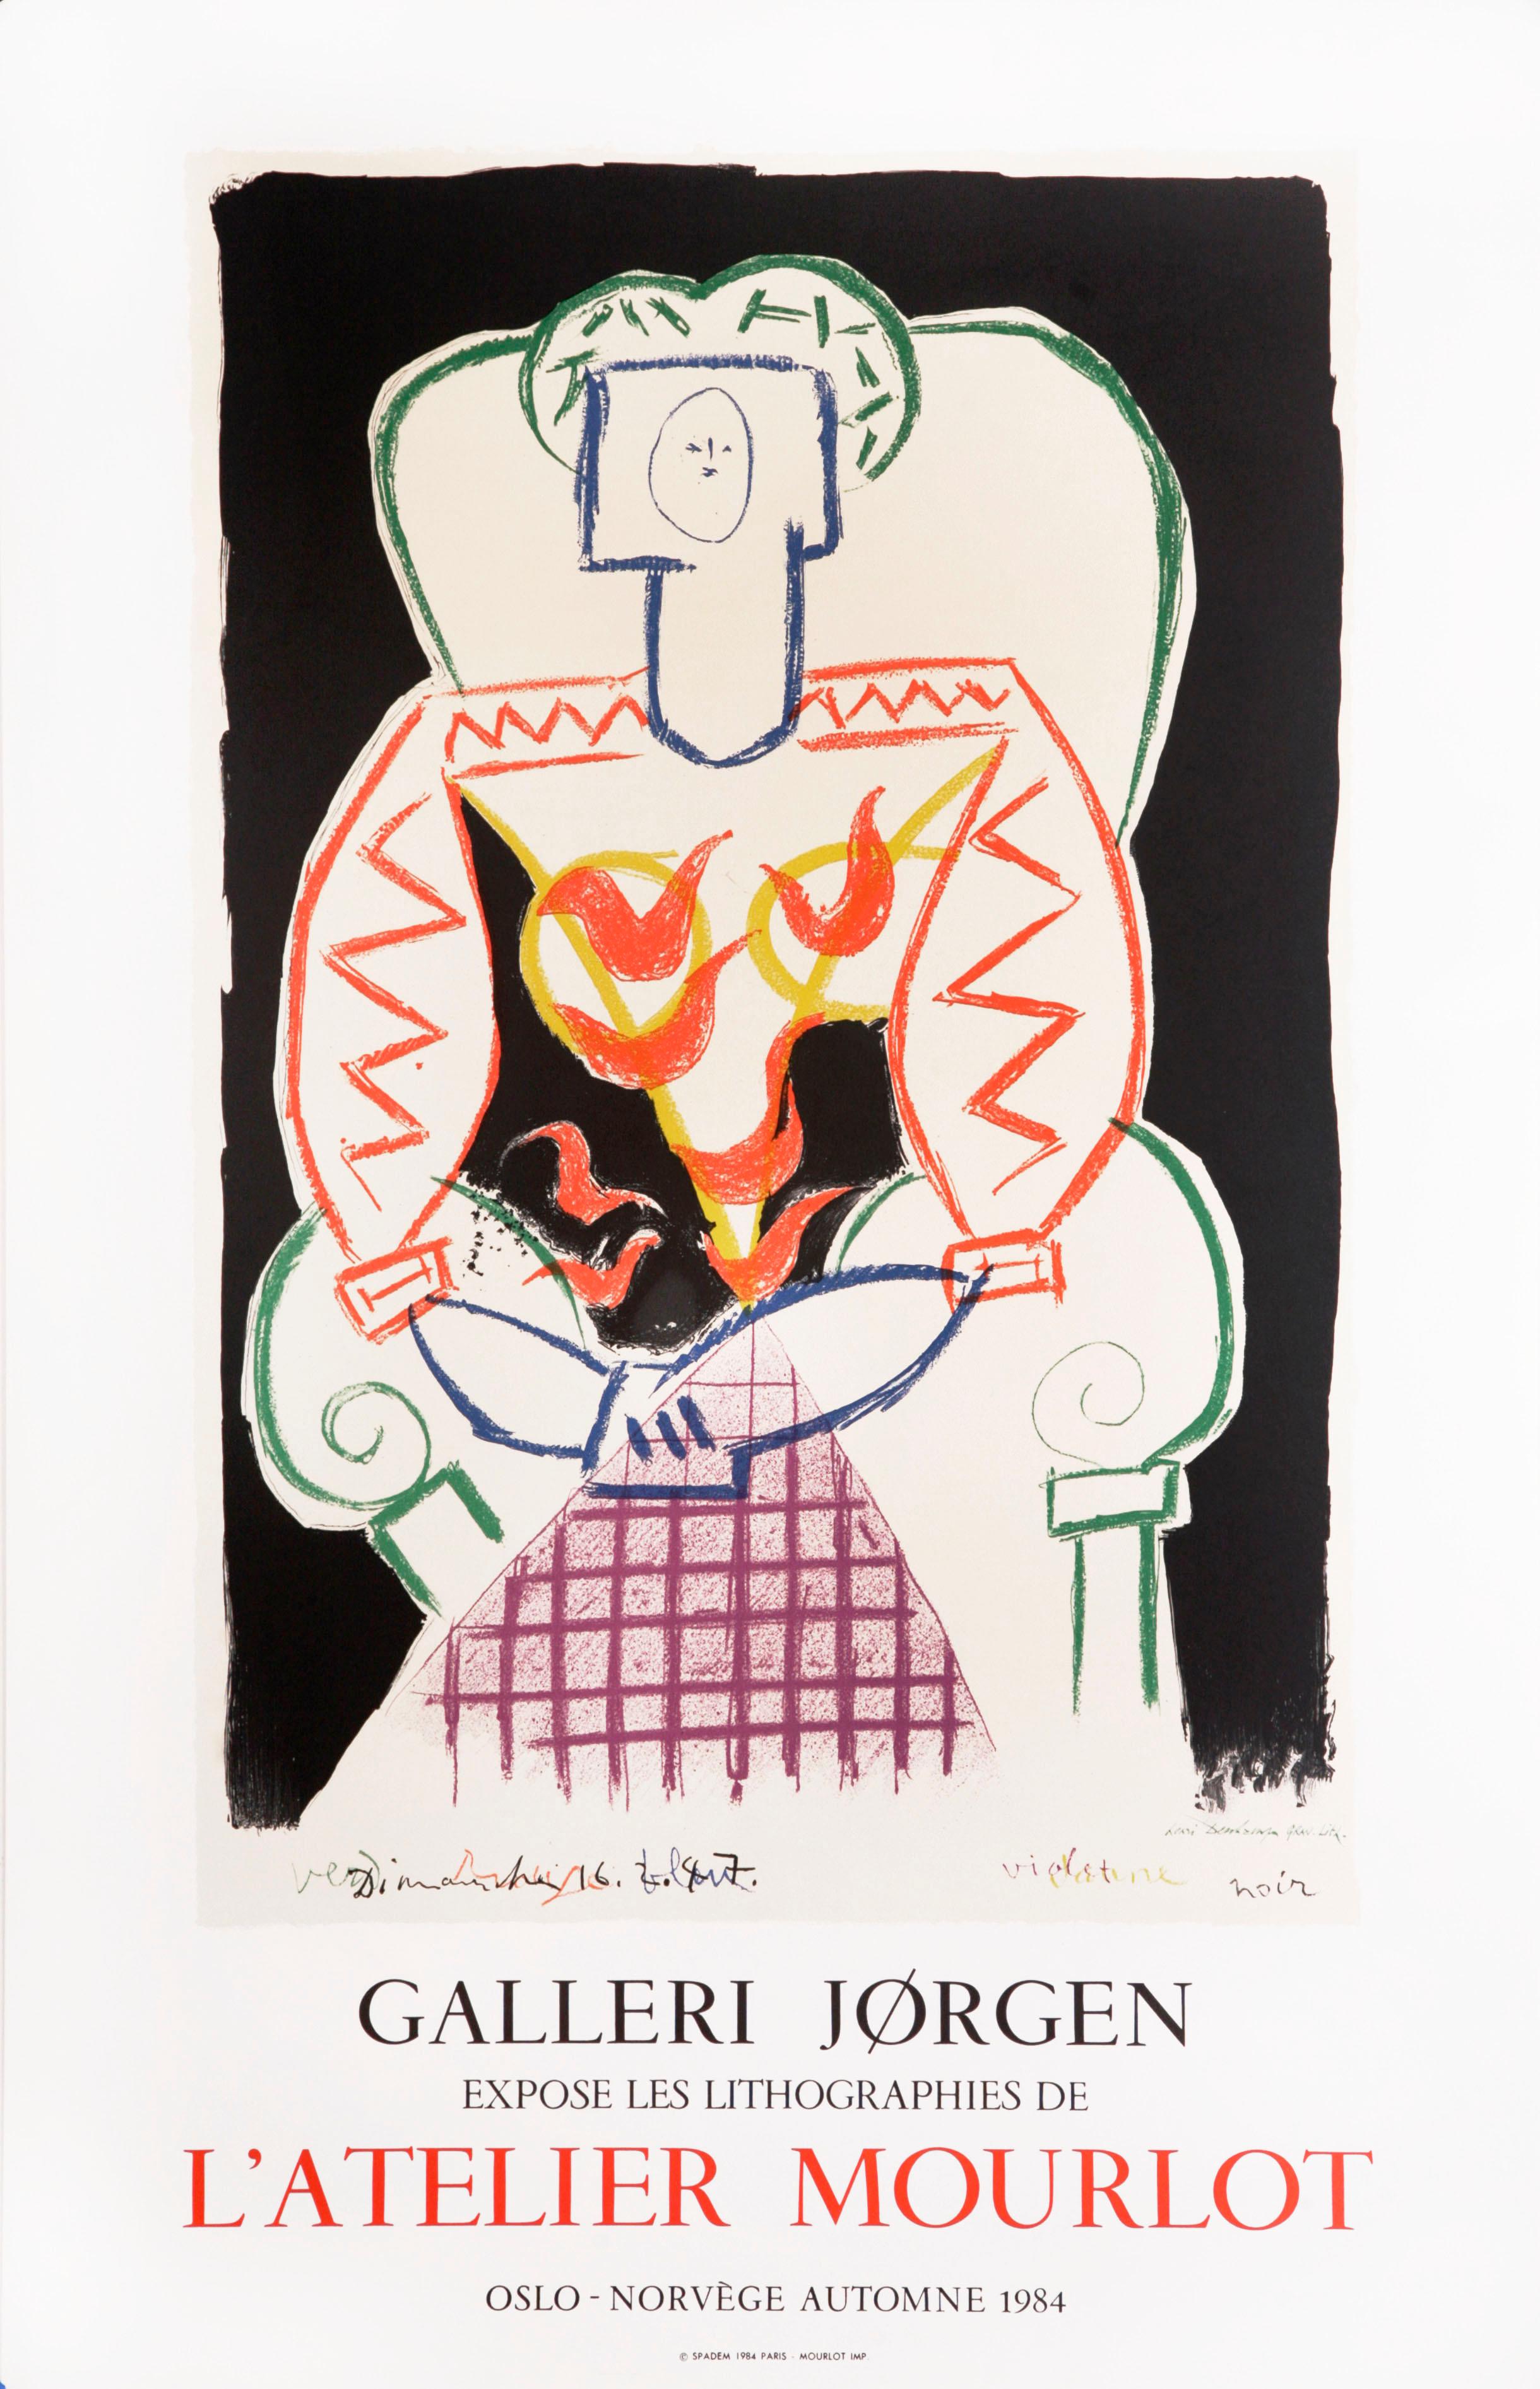 (after) Pablo Picasso Figurative Print - Galerie Jorgen, L'Atelier Mourlot by Pablo Picasso